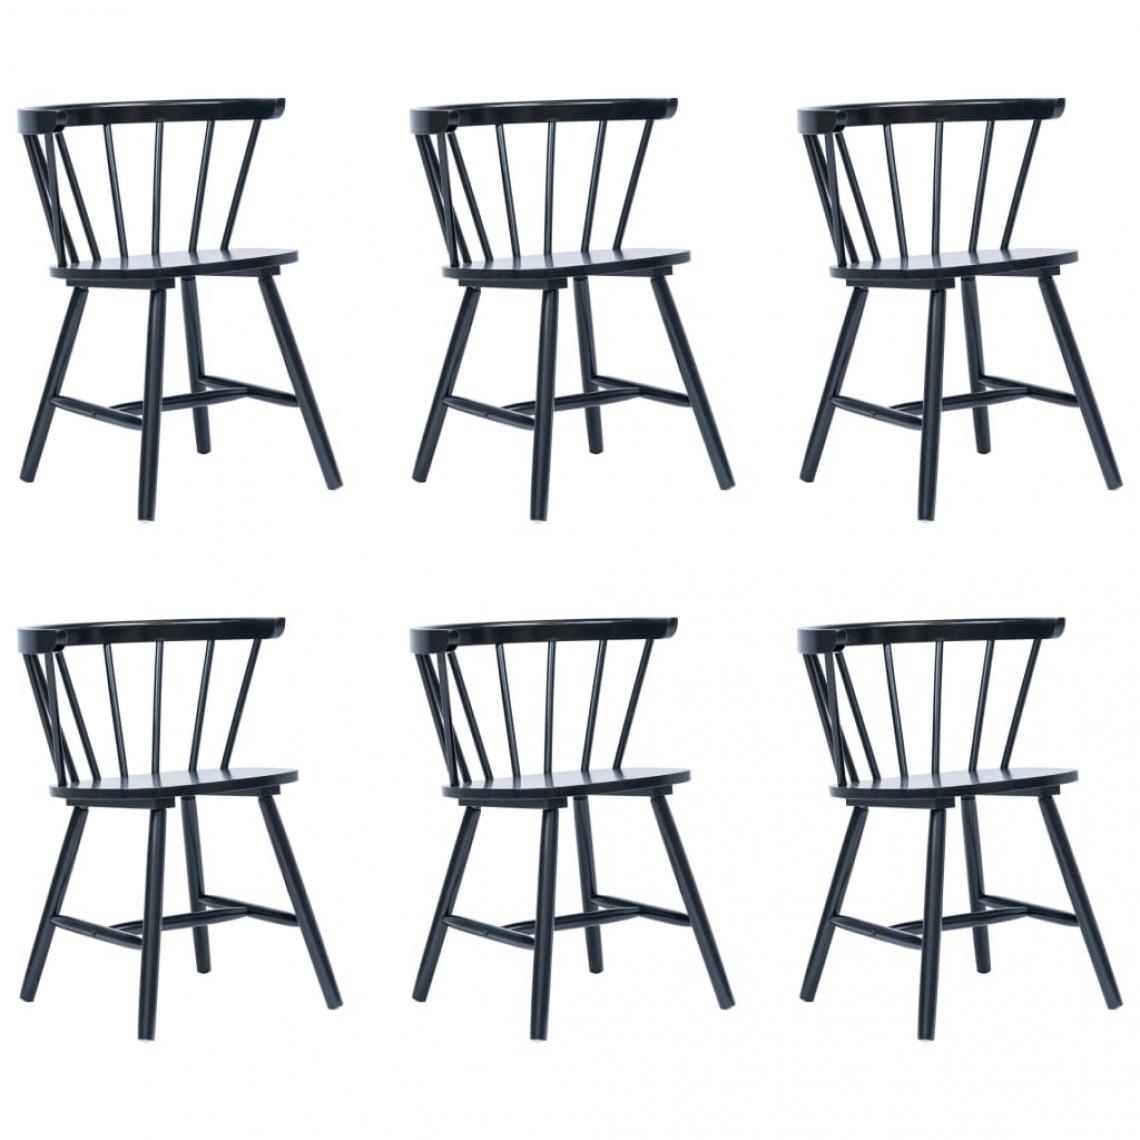 Decoshop26 - Lot de 6 chaises de salle à manger cuisine design élégant bois d'hévéa massif noir CDS022666 - Chaises